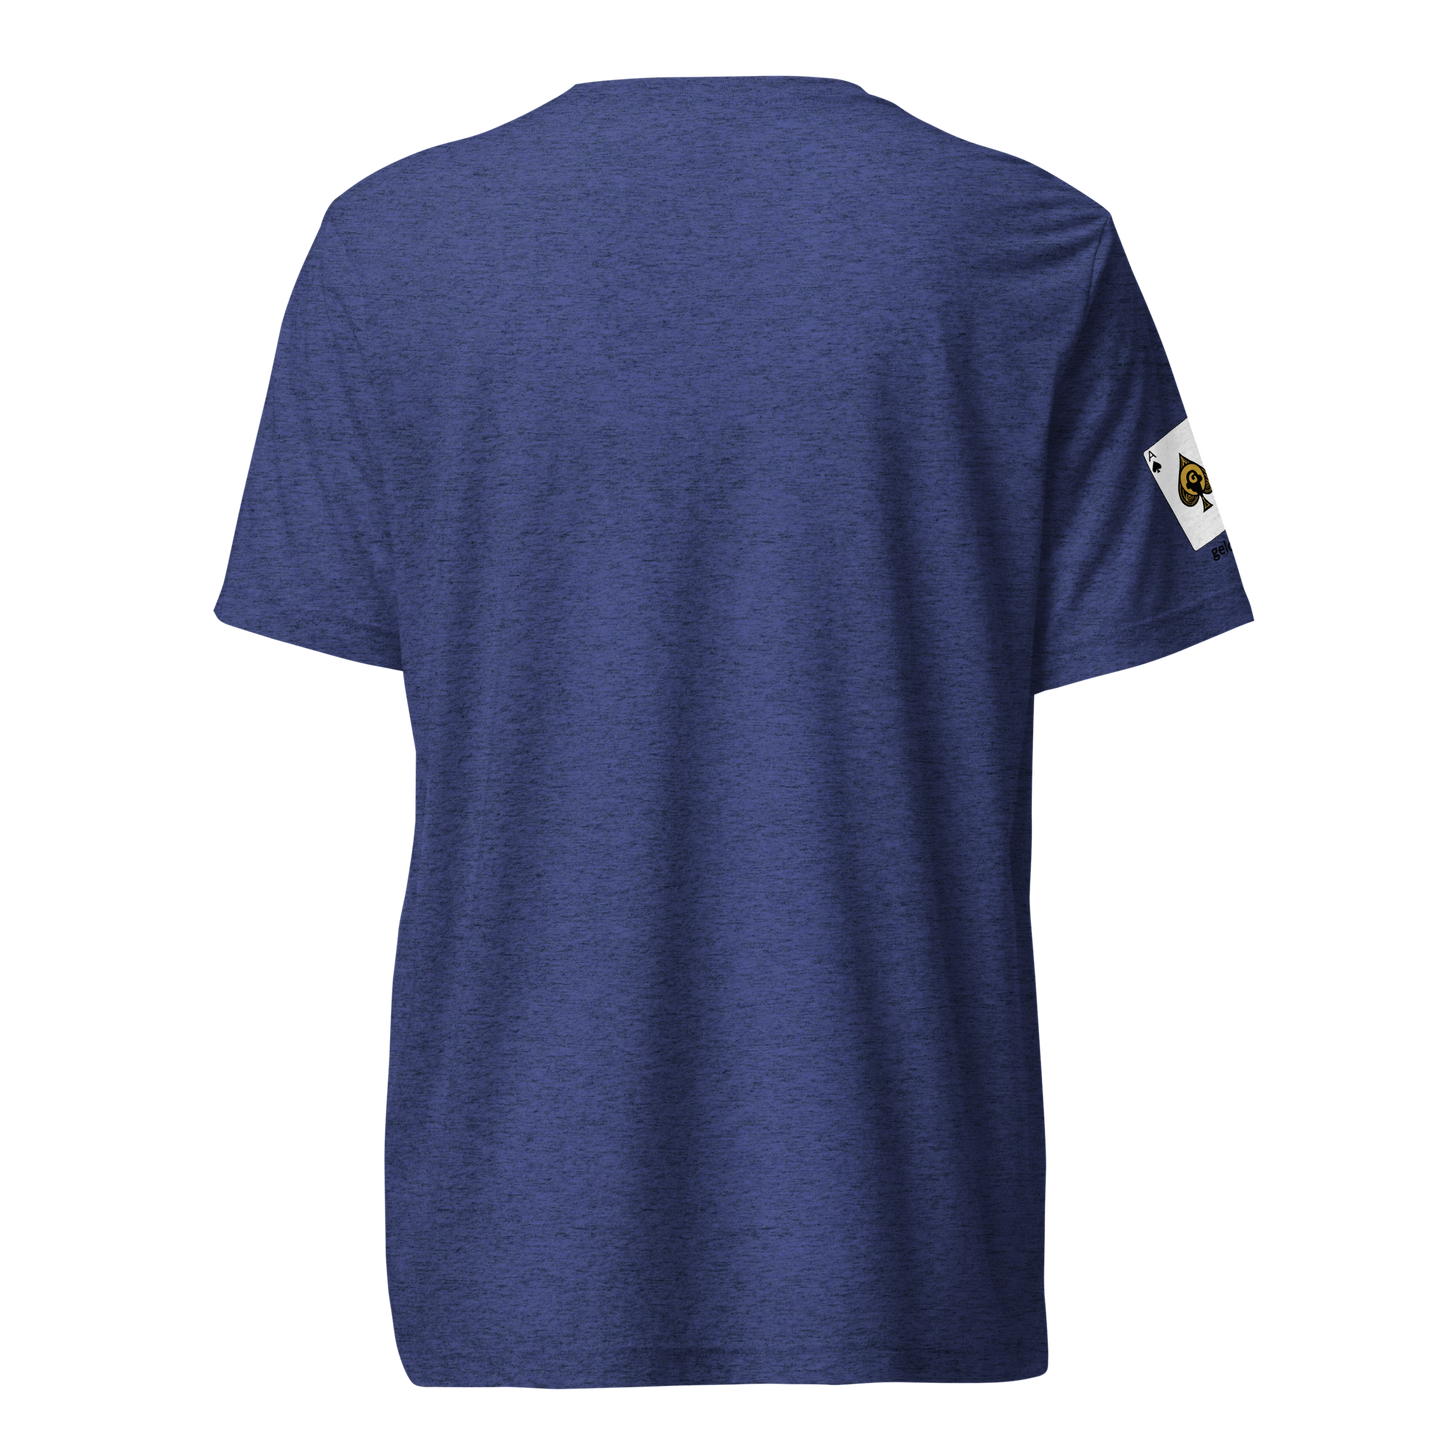 Gelotto VIP Super-Soft short sleeve t-shirt (gold logo)